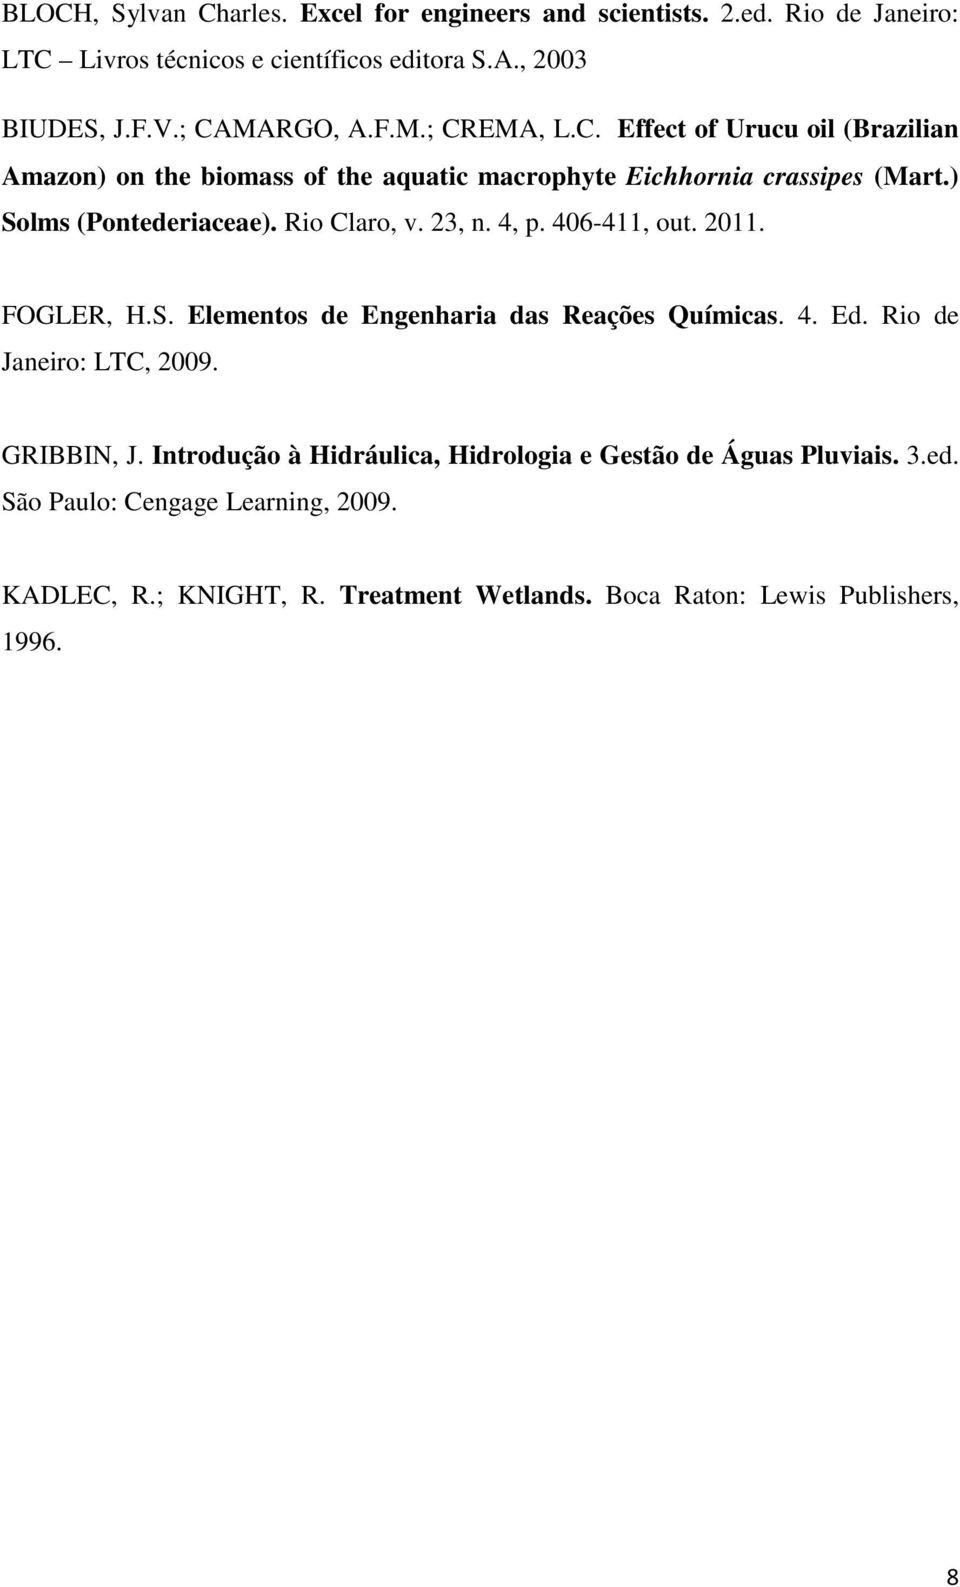 Rio Claro, v. 23, n. 4, p. 406-411, out. 2011. FOGLER, H.S. Elementos de Engenharia das Reações Químicas. 4. Ed. Rio de Janeiro: LTC, 2009. GRIBBIN, J.